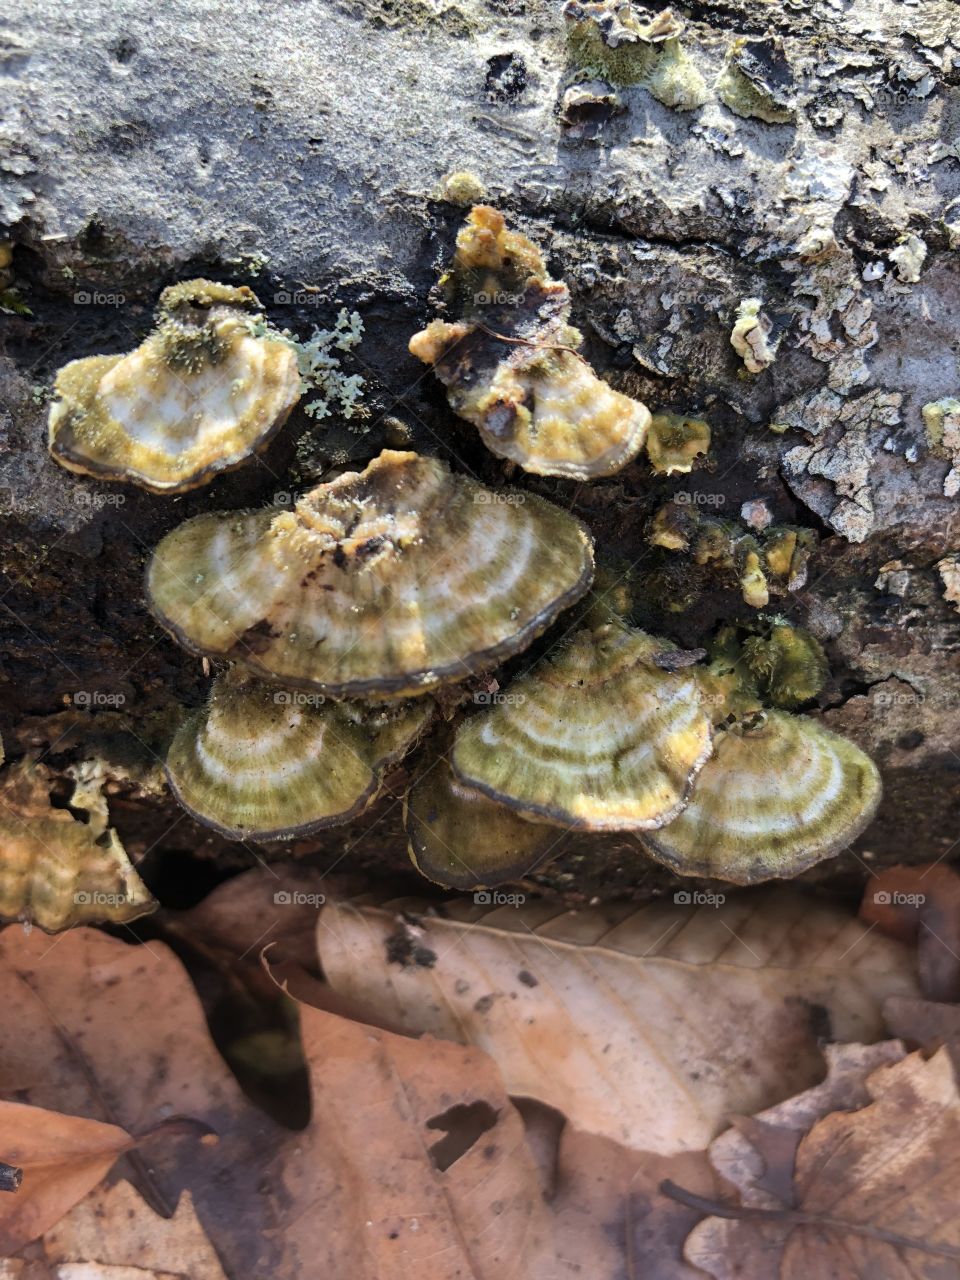 Pretty textured fungi